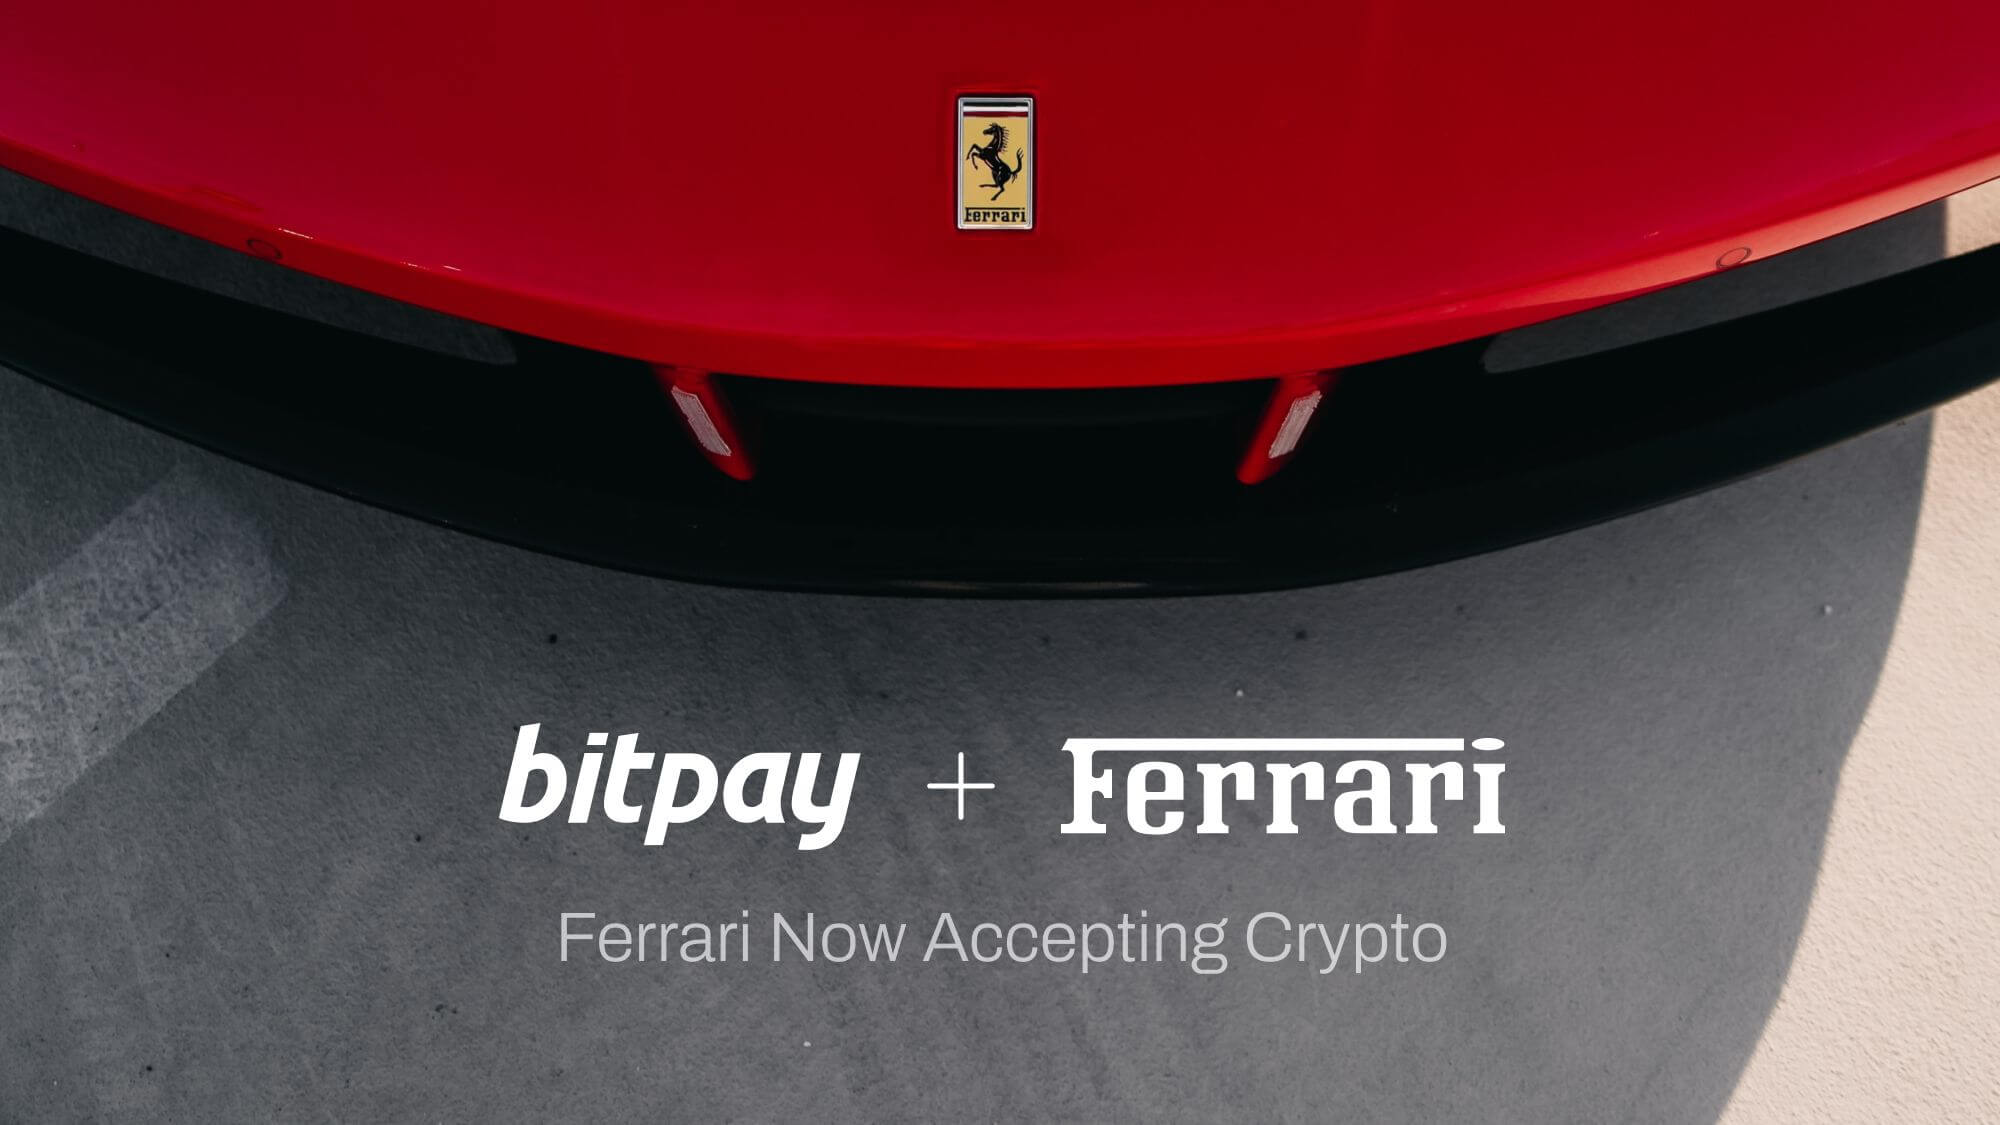 Какие автомобили можно купить за криптовалюту. Анонс партнёрства с BitPay компанией Ferrari. Фото.